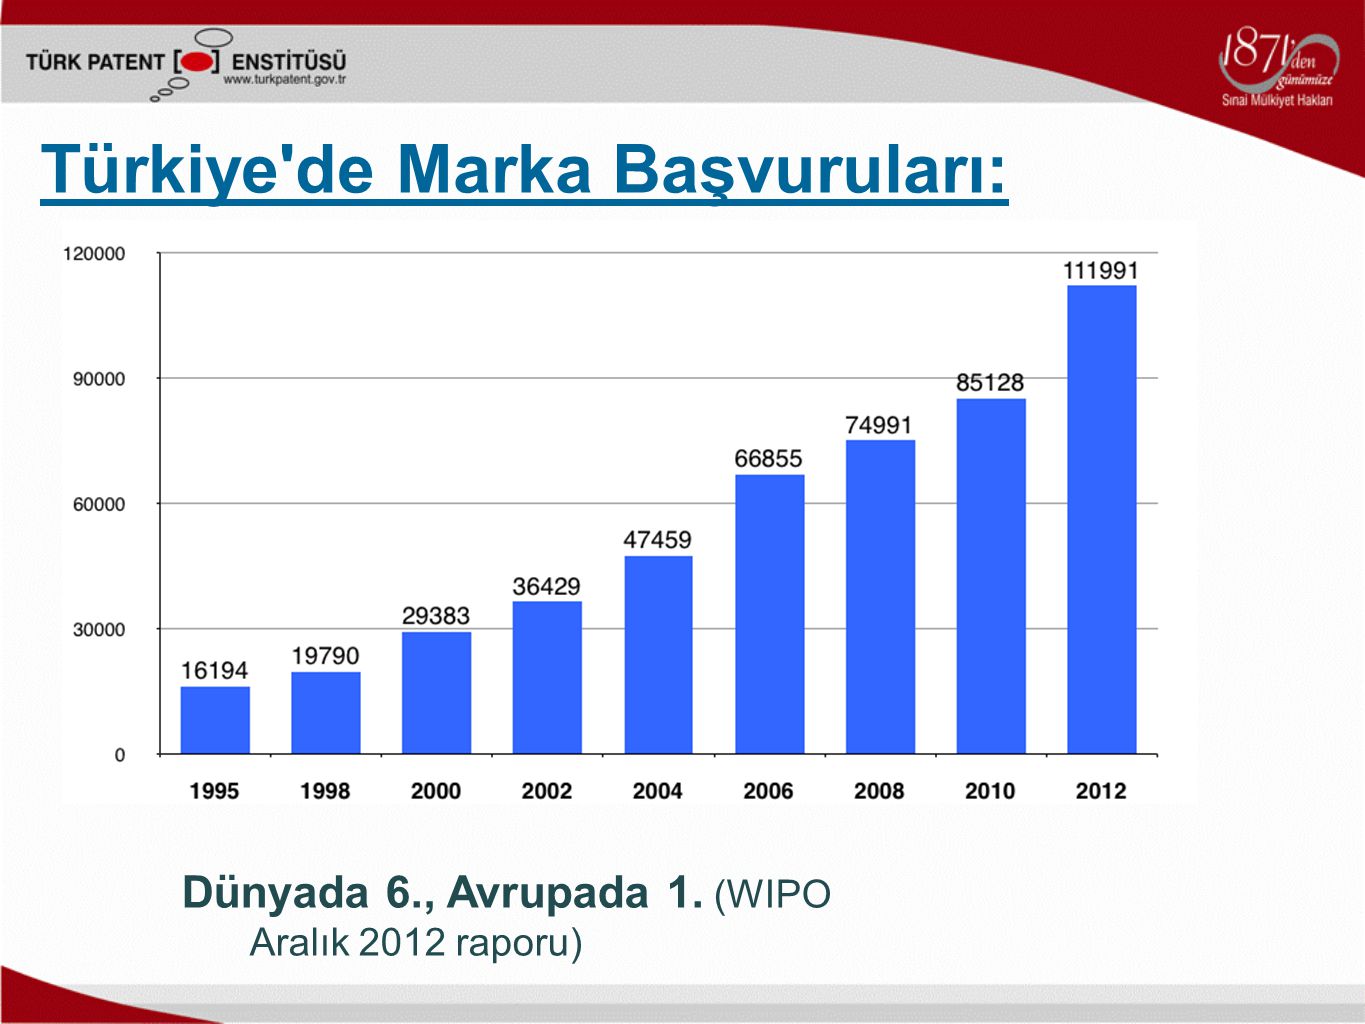 Dünyada 6., Avrupada 1. (WIPO Aralık 2012 raporu) Türkiye de Marka Başvuruları: